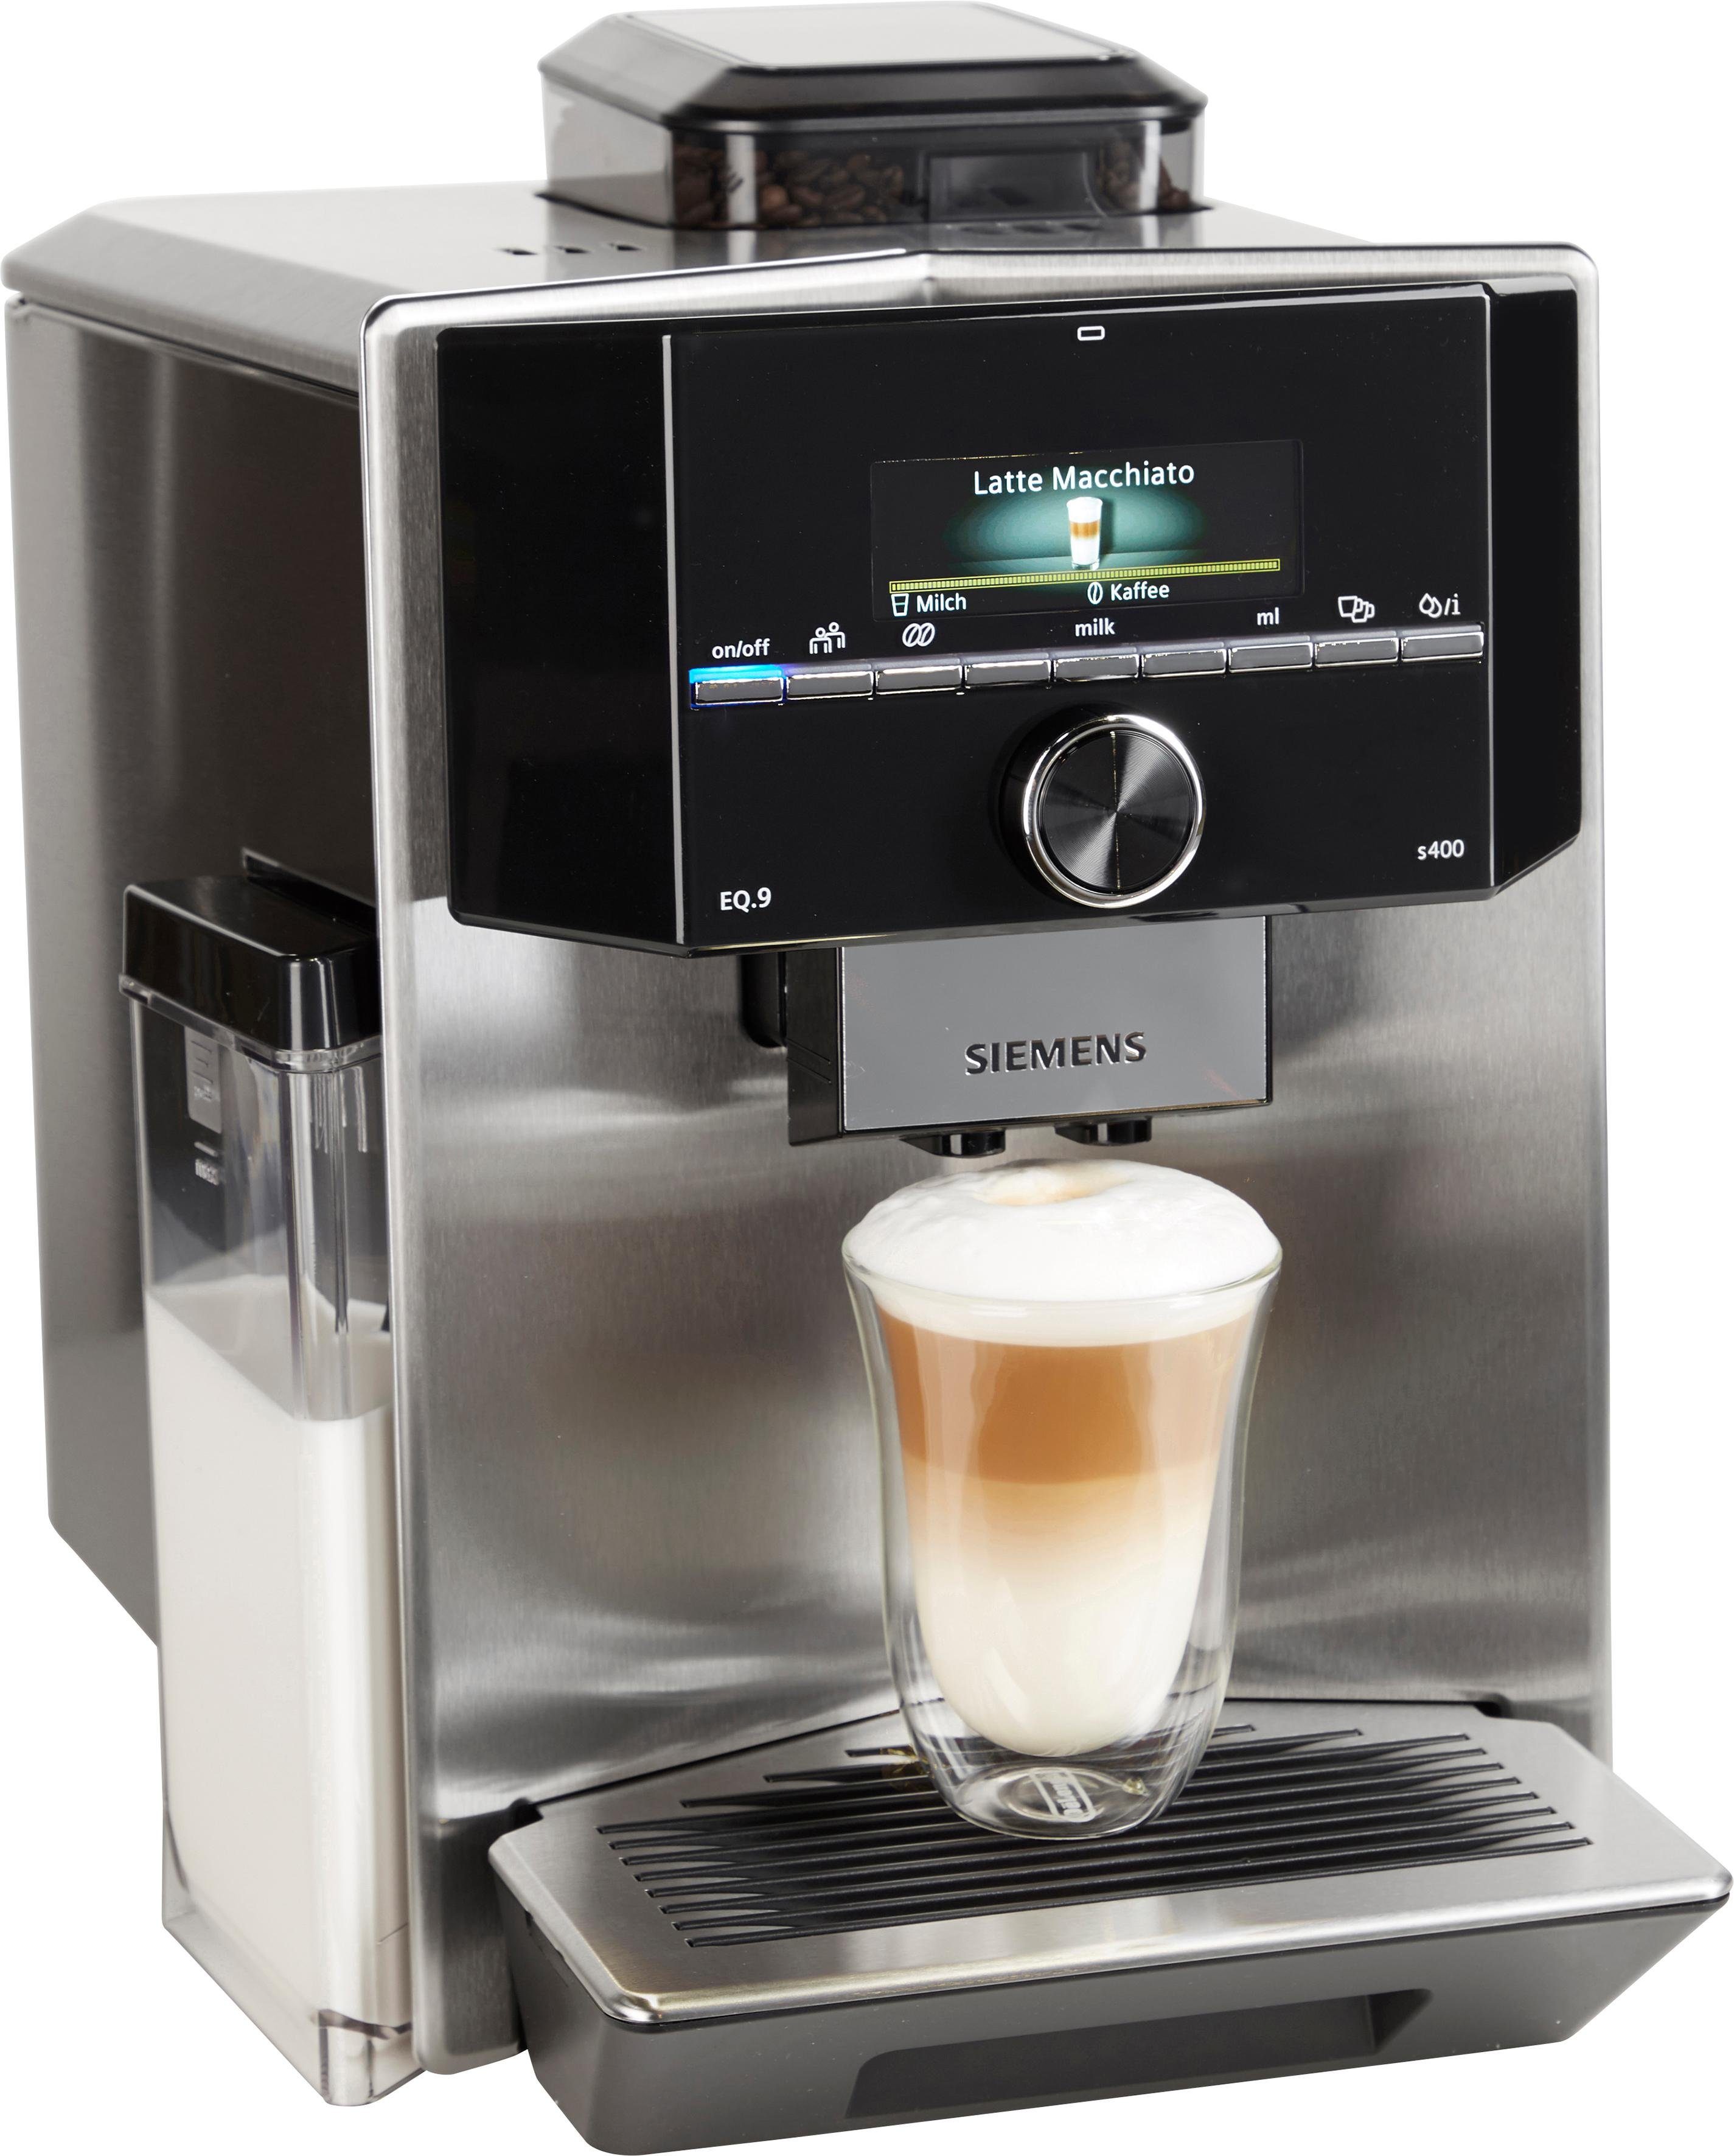 SIEMENS Kaffeevollautomat EQ.9 s400 TI924501DE, extra leise, automatische  Milchsystem-Reinigung, bis zu 6 individuelle Profile, Edelstahl online  kaufen | OTTO